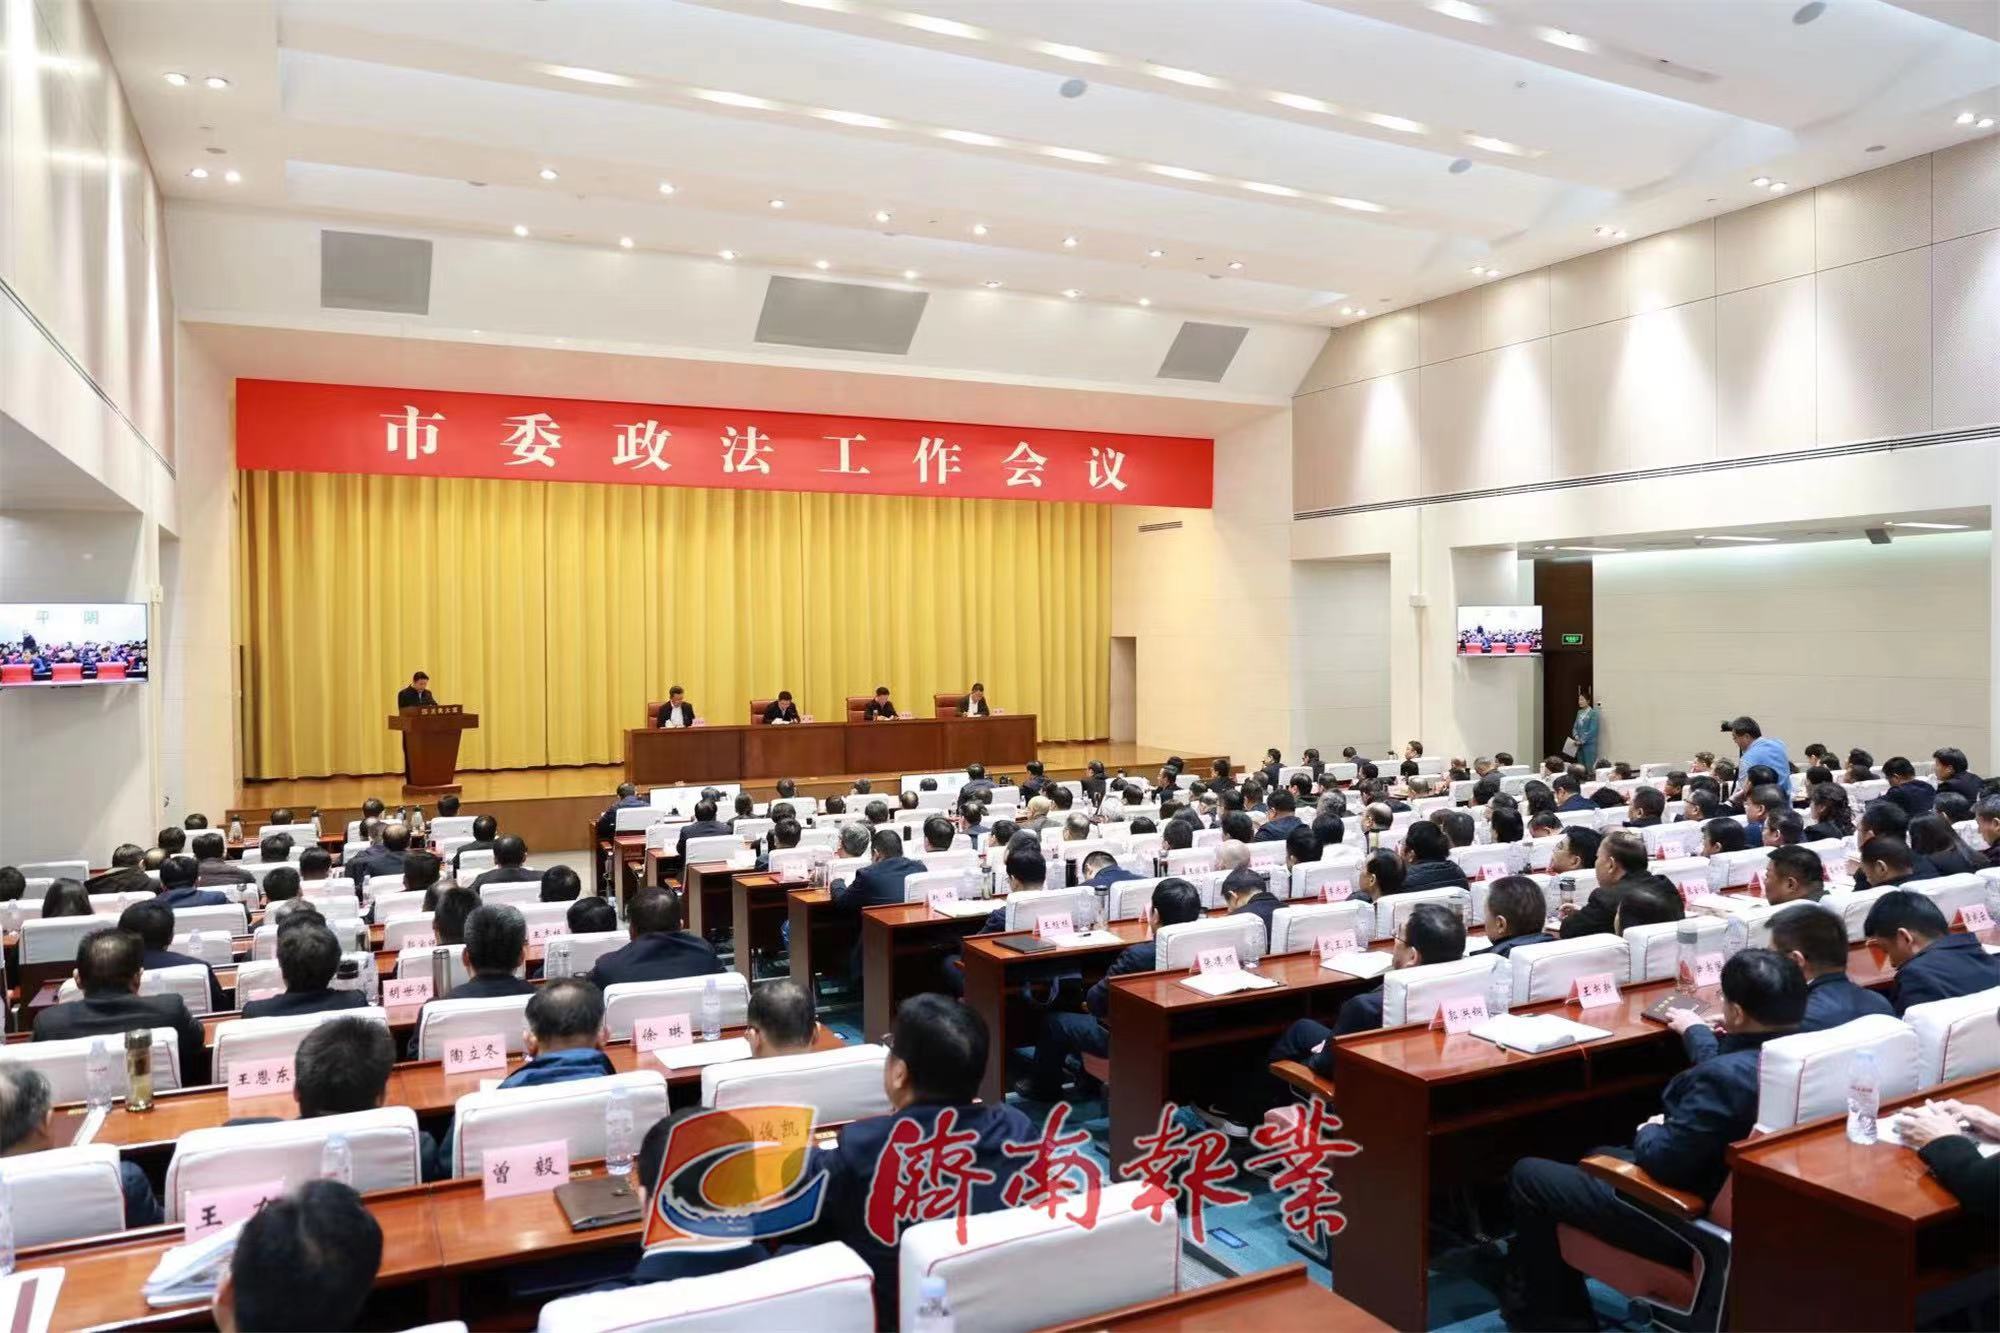 刘强在市委政法工作会议上强调：奋力推进政法工作现代化 更好支撑和服务强省会建设